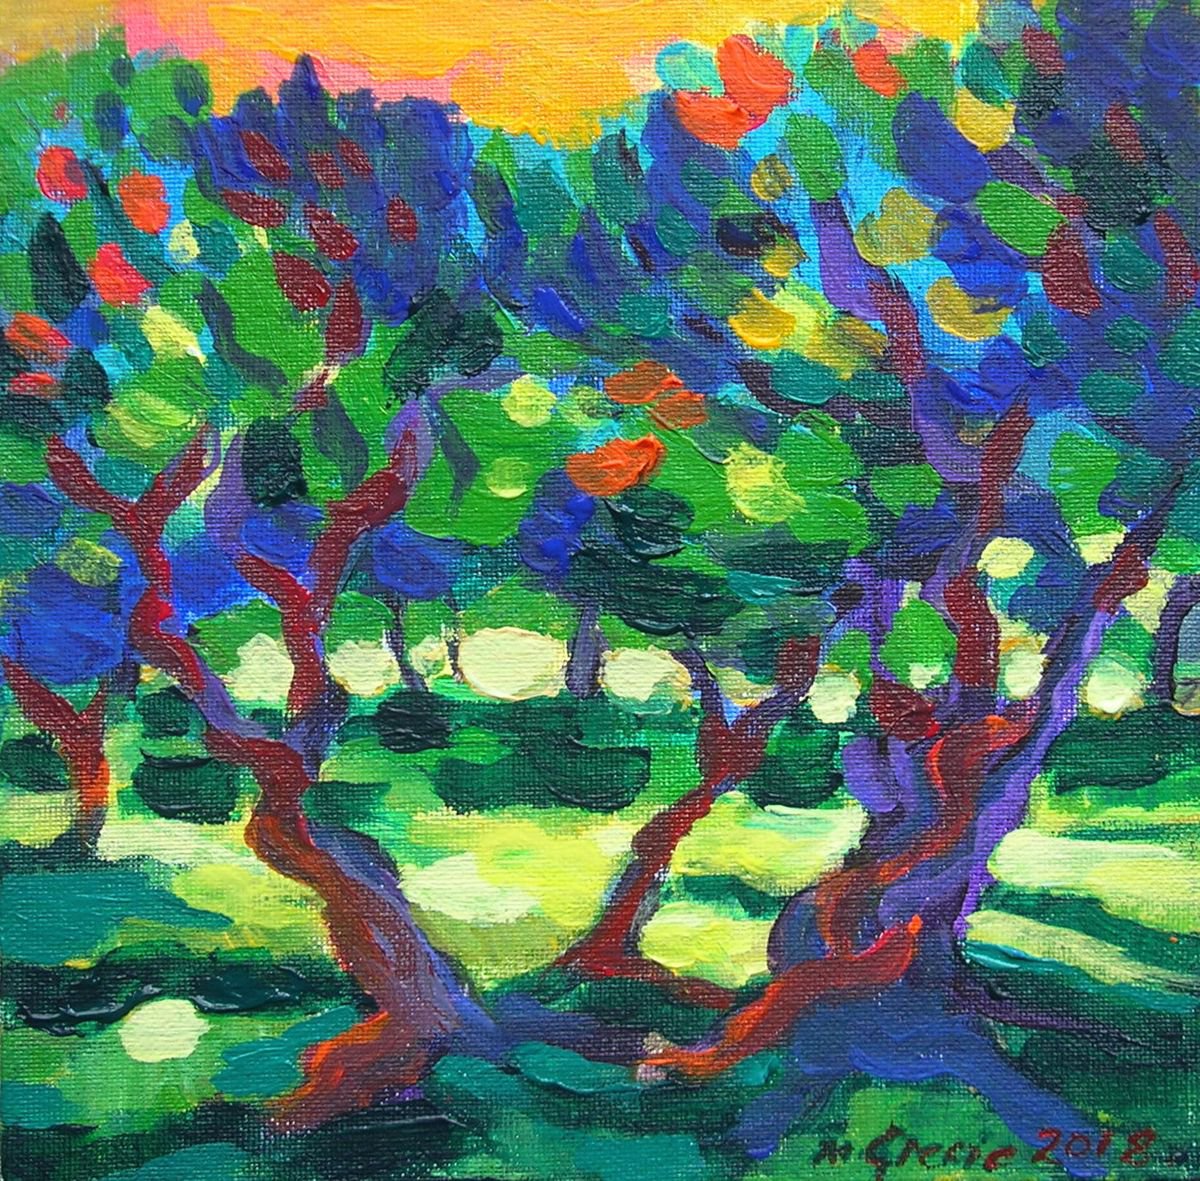 Olive trees study by Maja Grecic